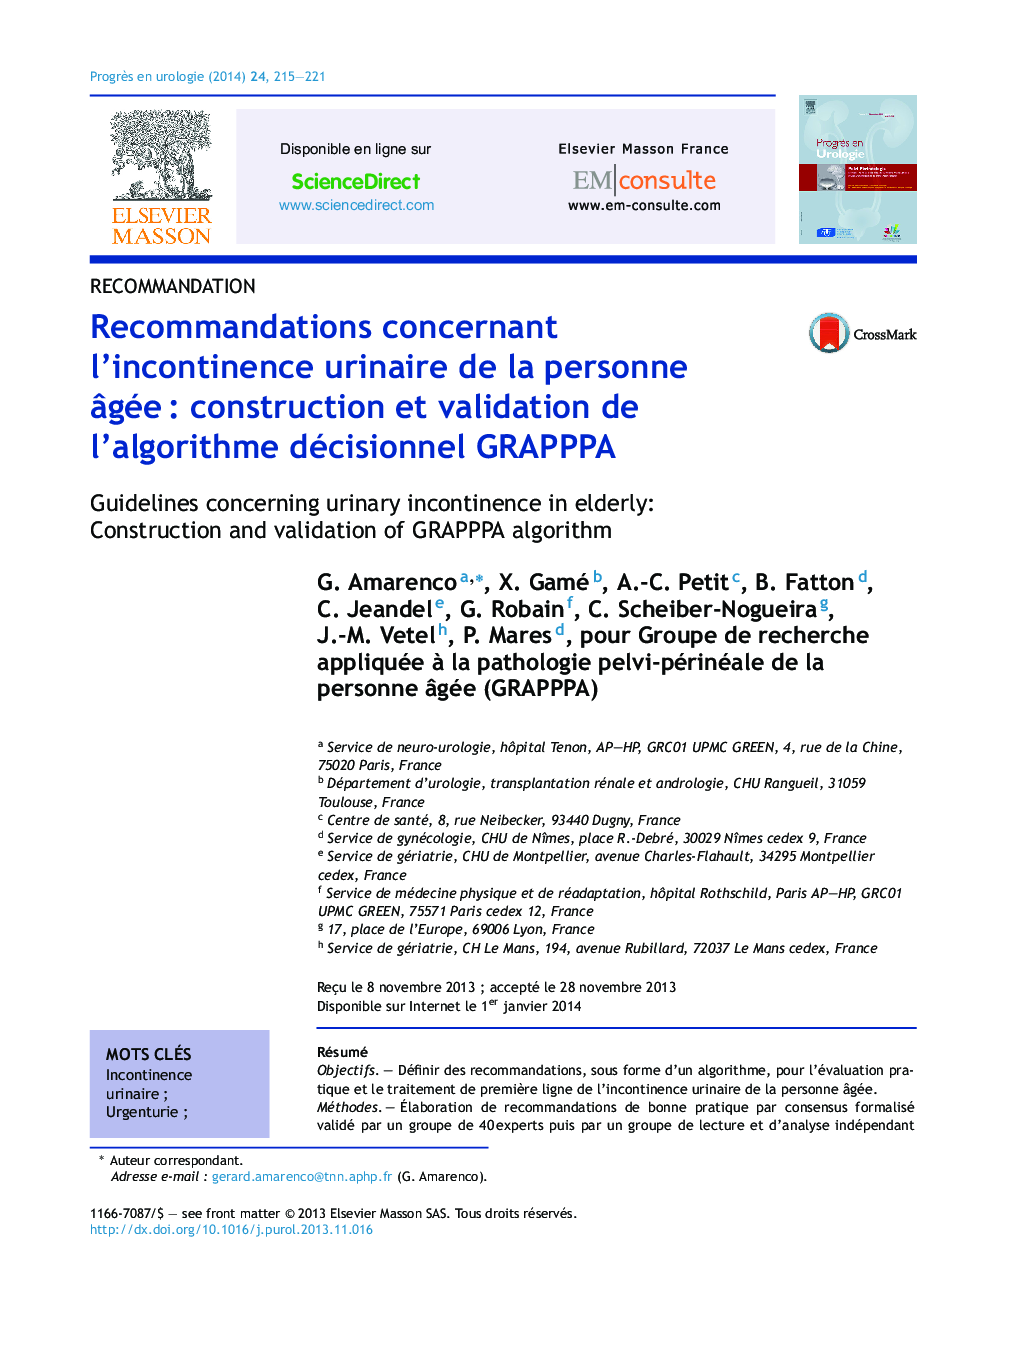 Recommandations concernant l’incontinence urinaire de la personne âgée : construction et validation de l’algorithme décisionnel GRAPPPA